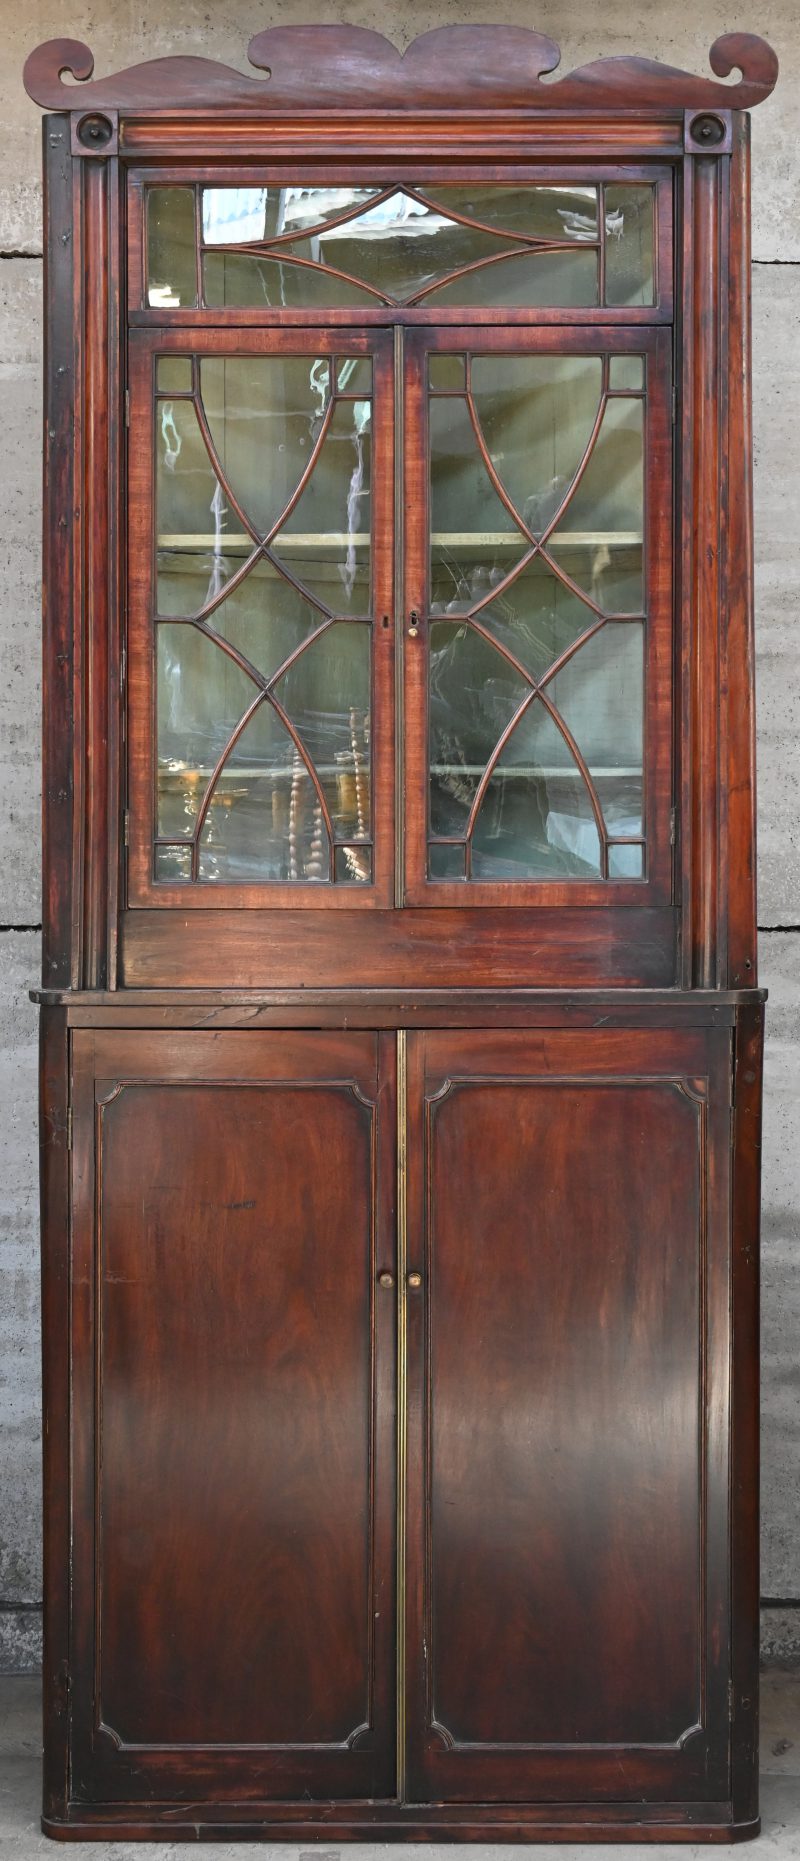 Een Georgian hoekbibliotheek van mahoniehout. Bovenaan twee beglaasde deuren met latwerk (twee ruitjes gebarsten), onderaan twee paneeldeuren. Messingen aanslaglijsten en uitgewerkte kroonlijst. XIXde eeuw.